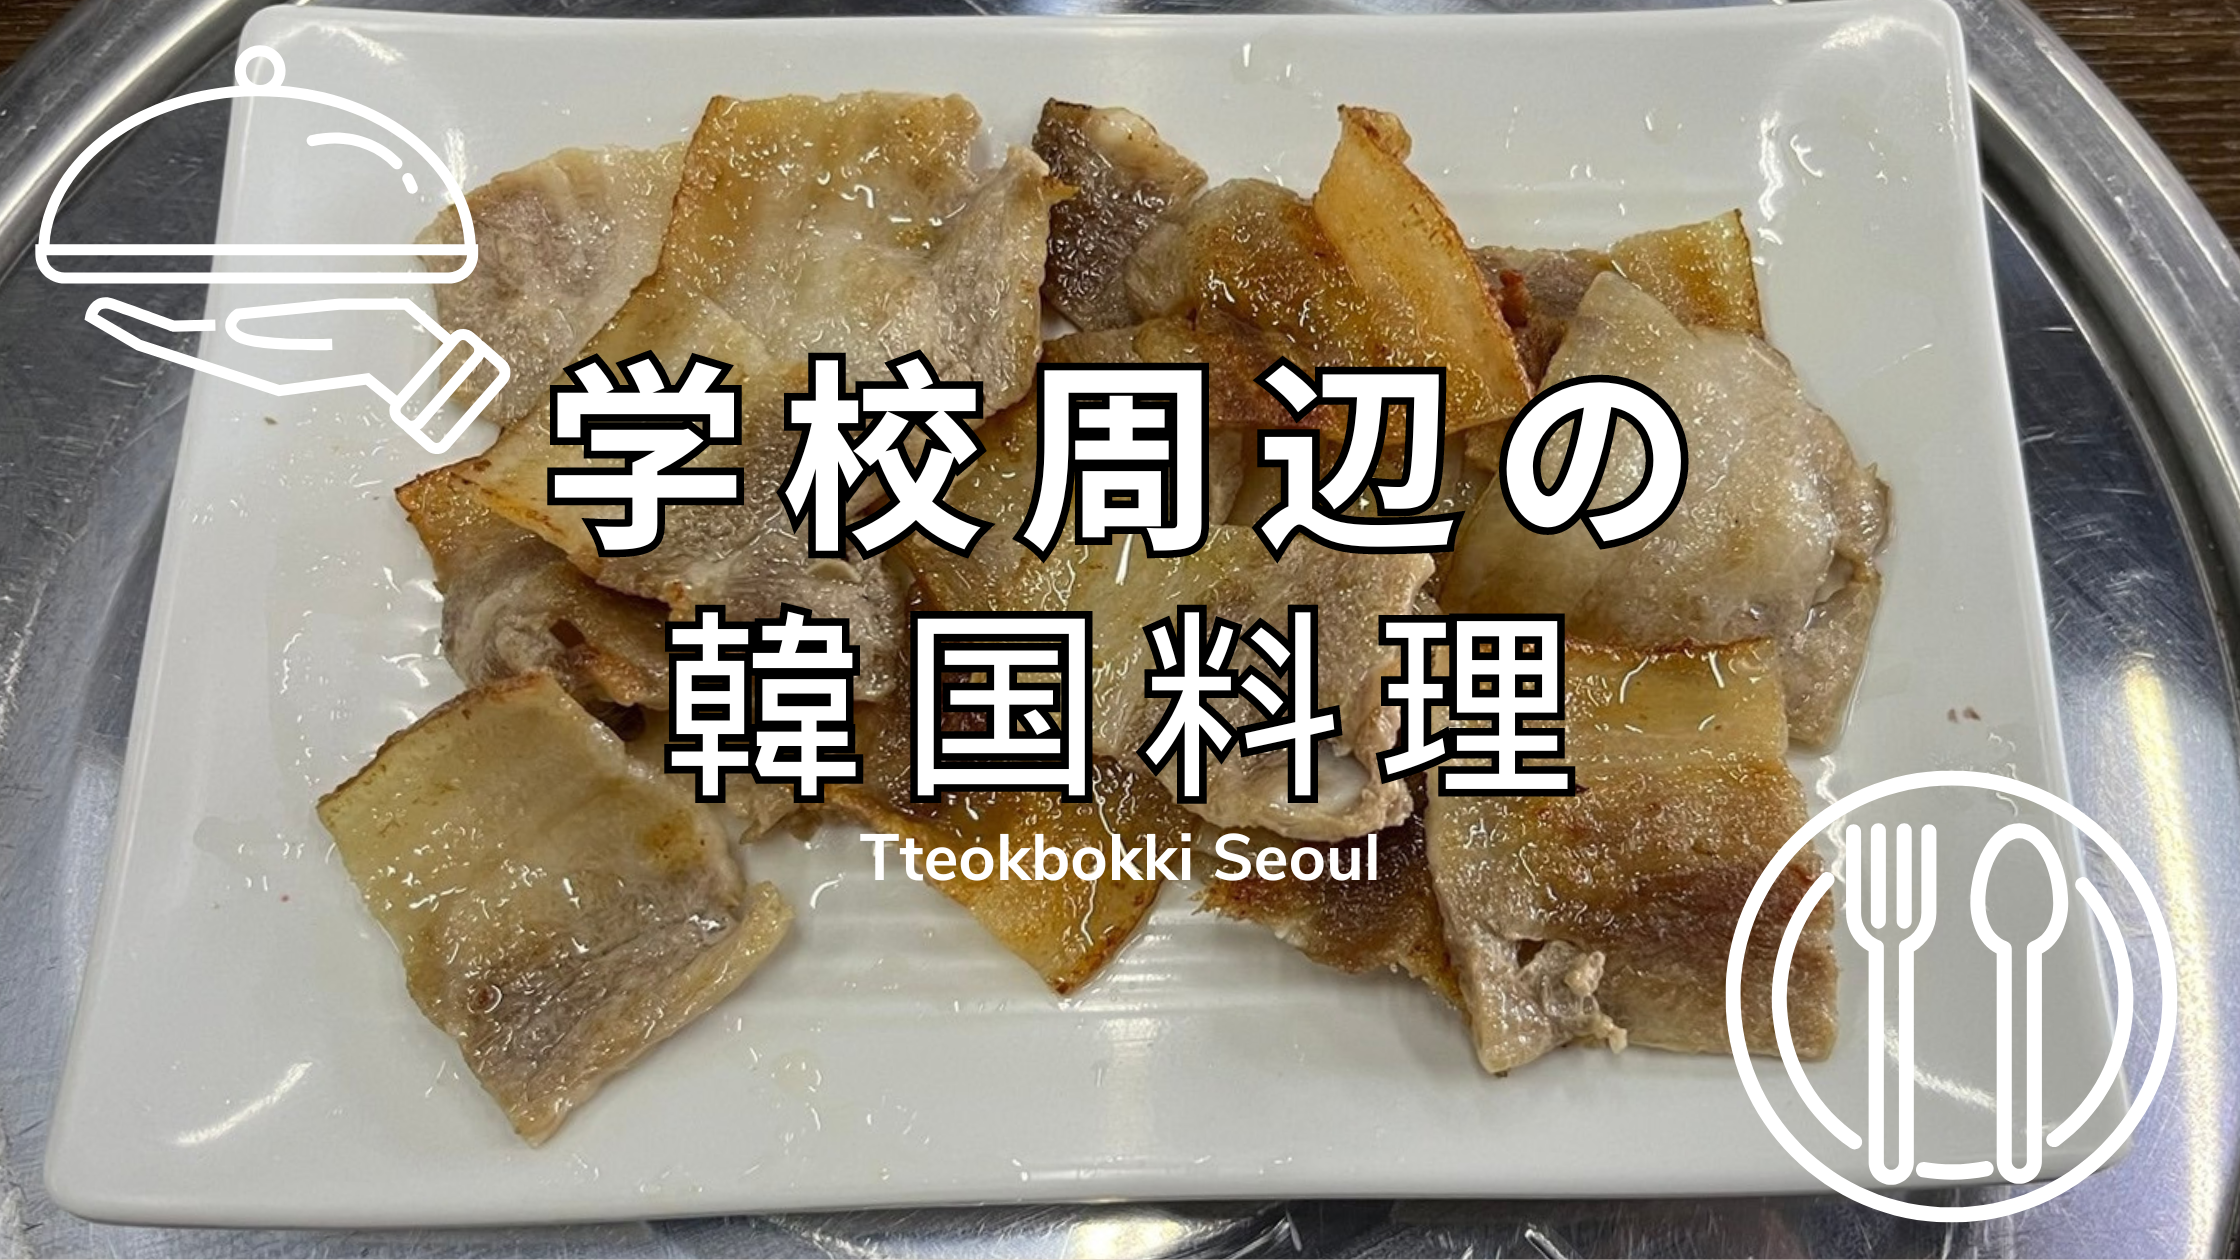 セブ島で本場のキムチが楽しめる韓国料理屋【Tteokbokki Seoul】